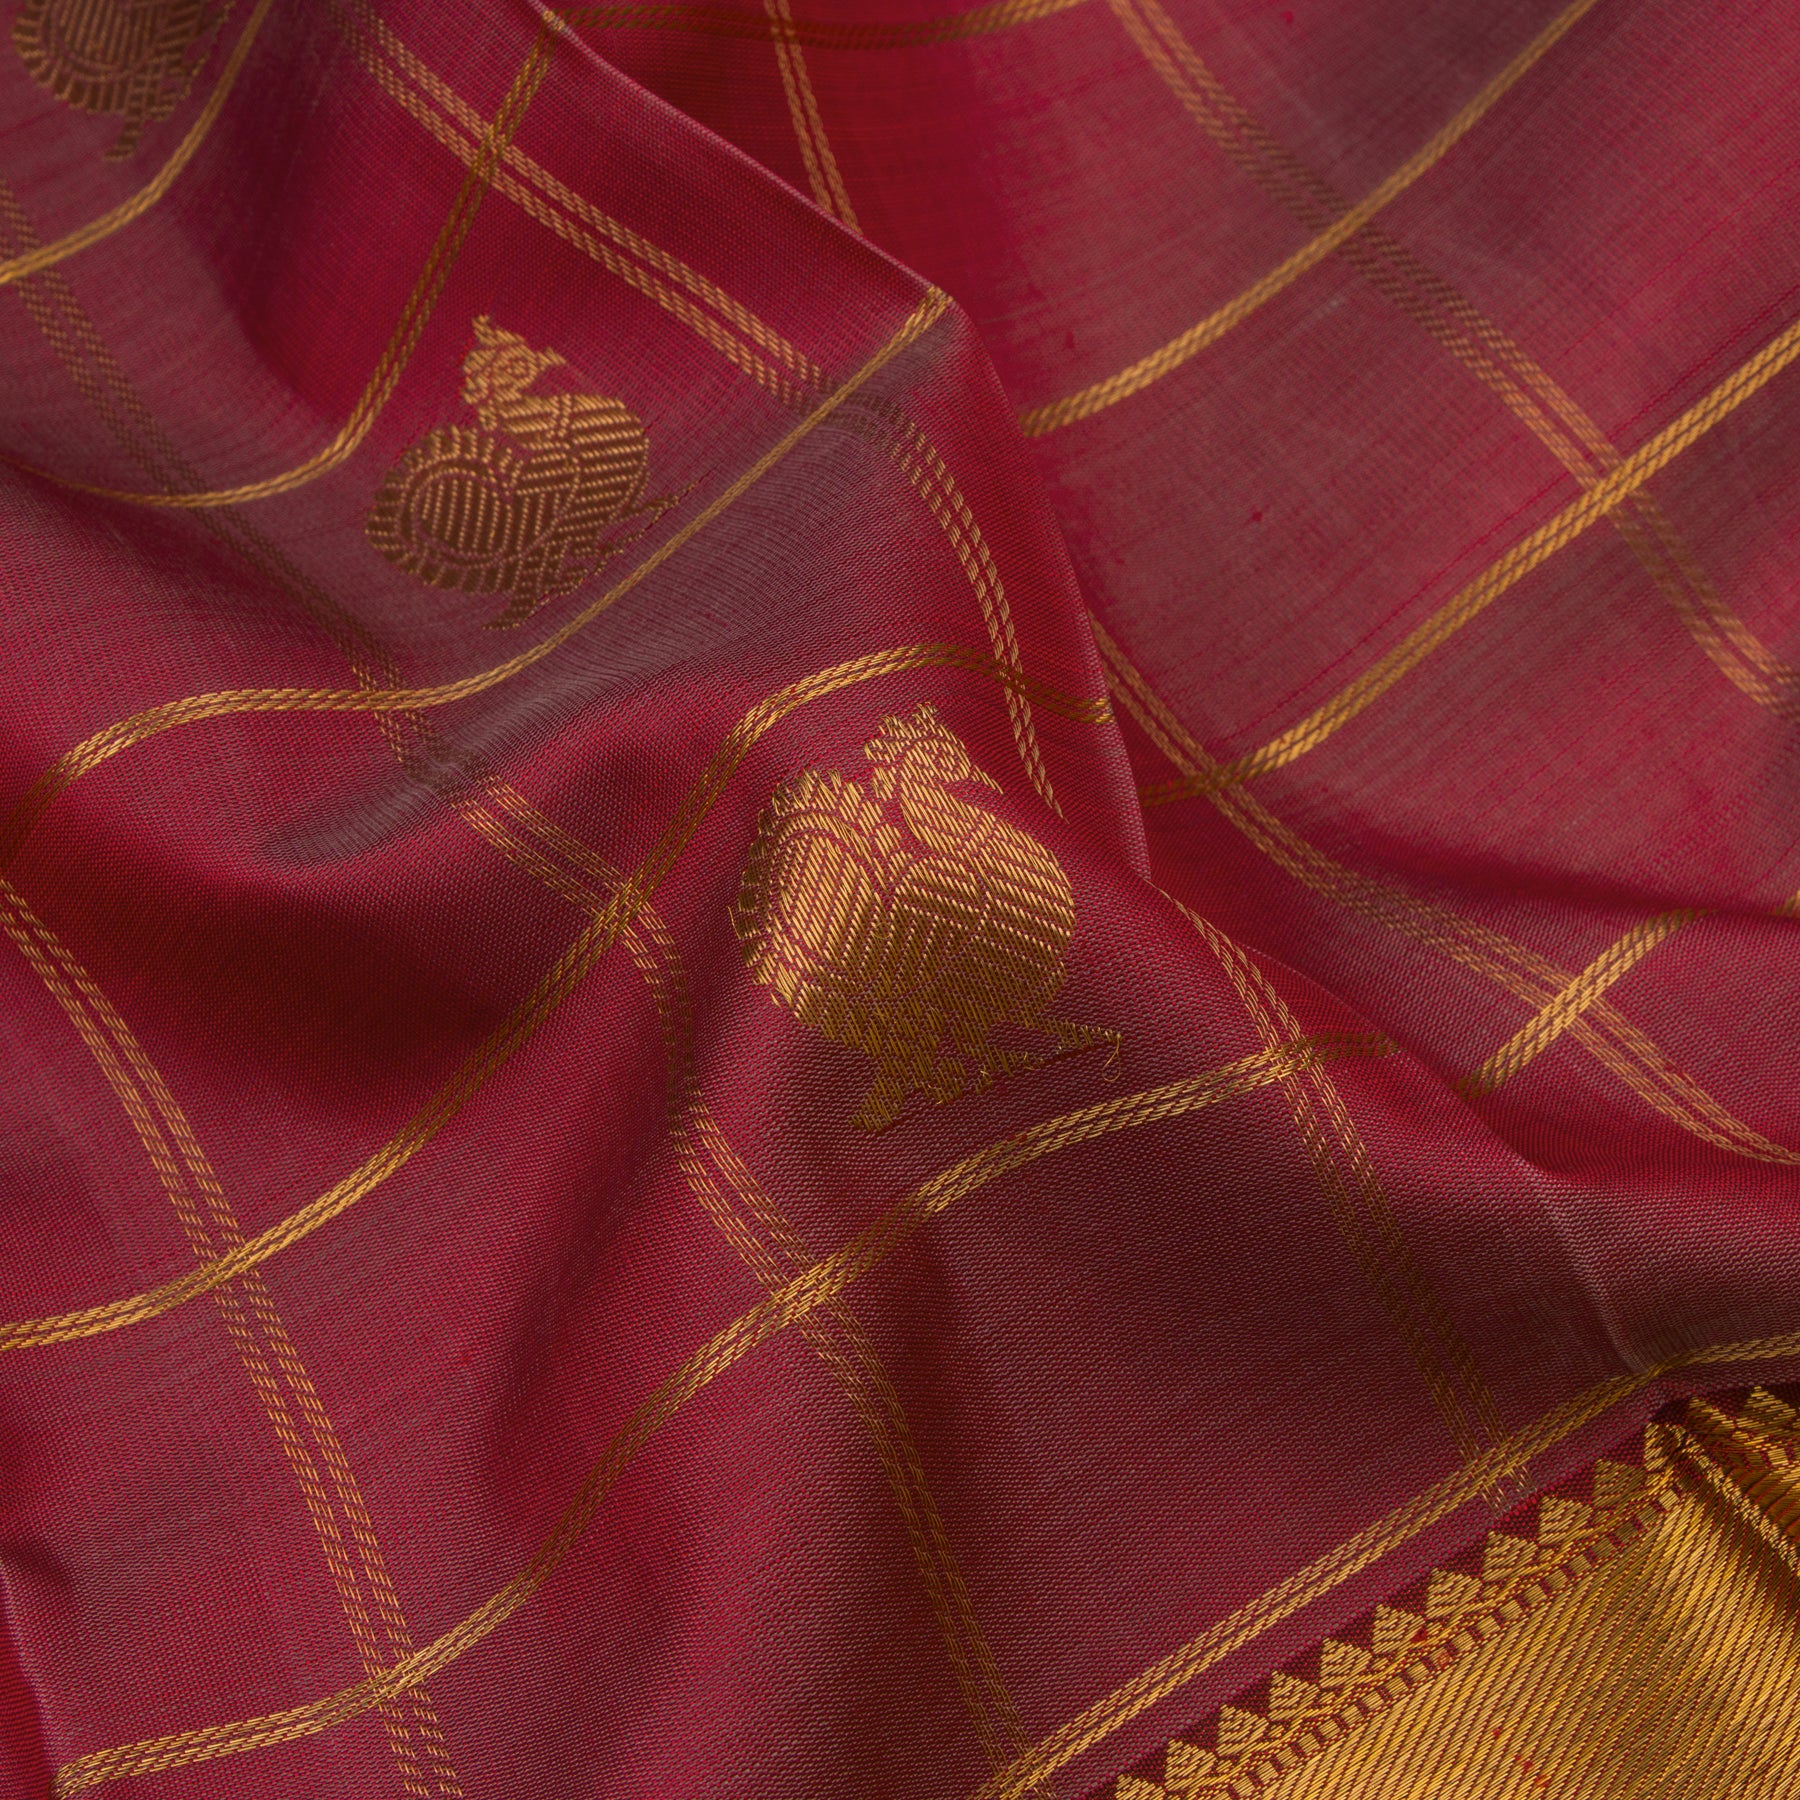 Kanakavalli Kanjivaram Silk Sari 22-599-HS001-03836 - Fabric View